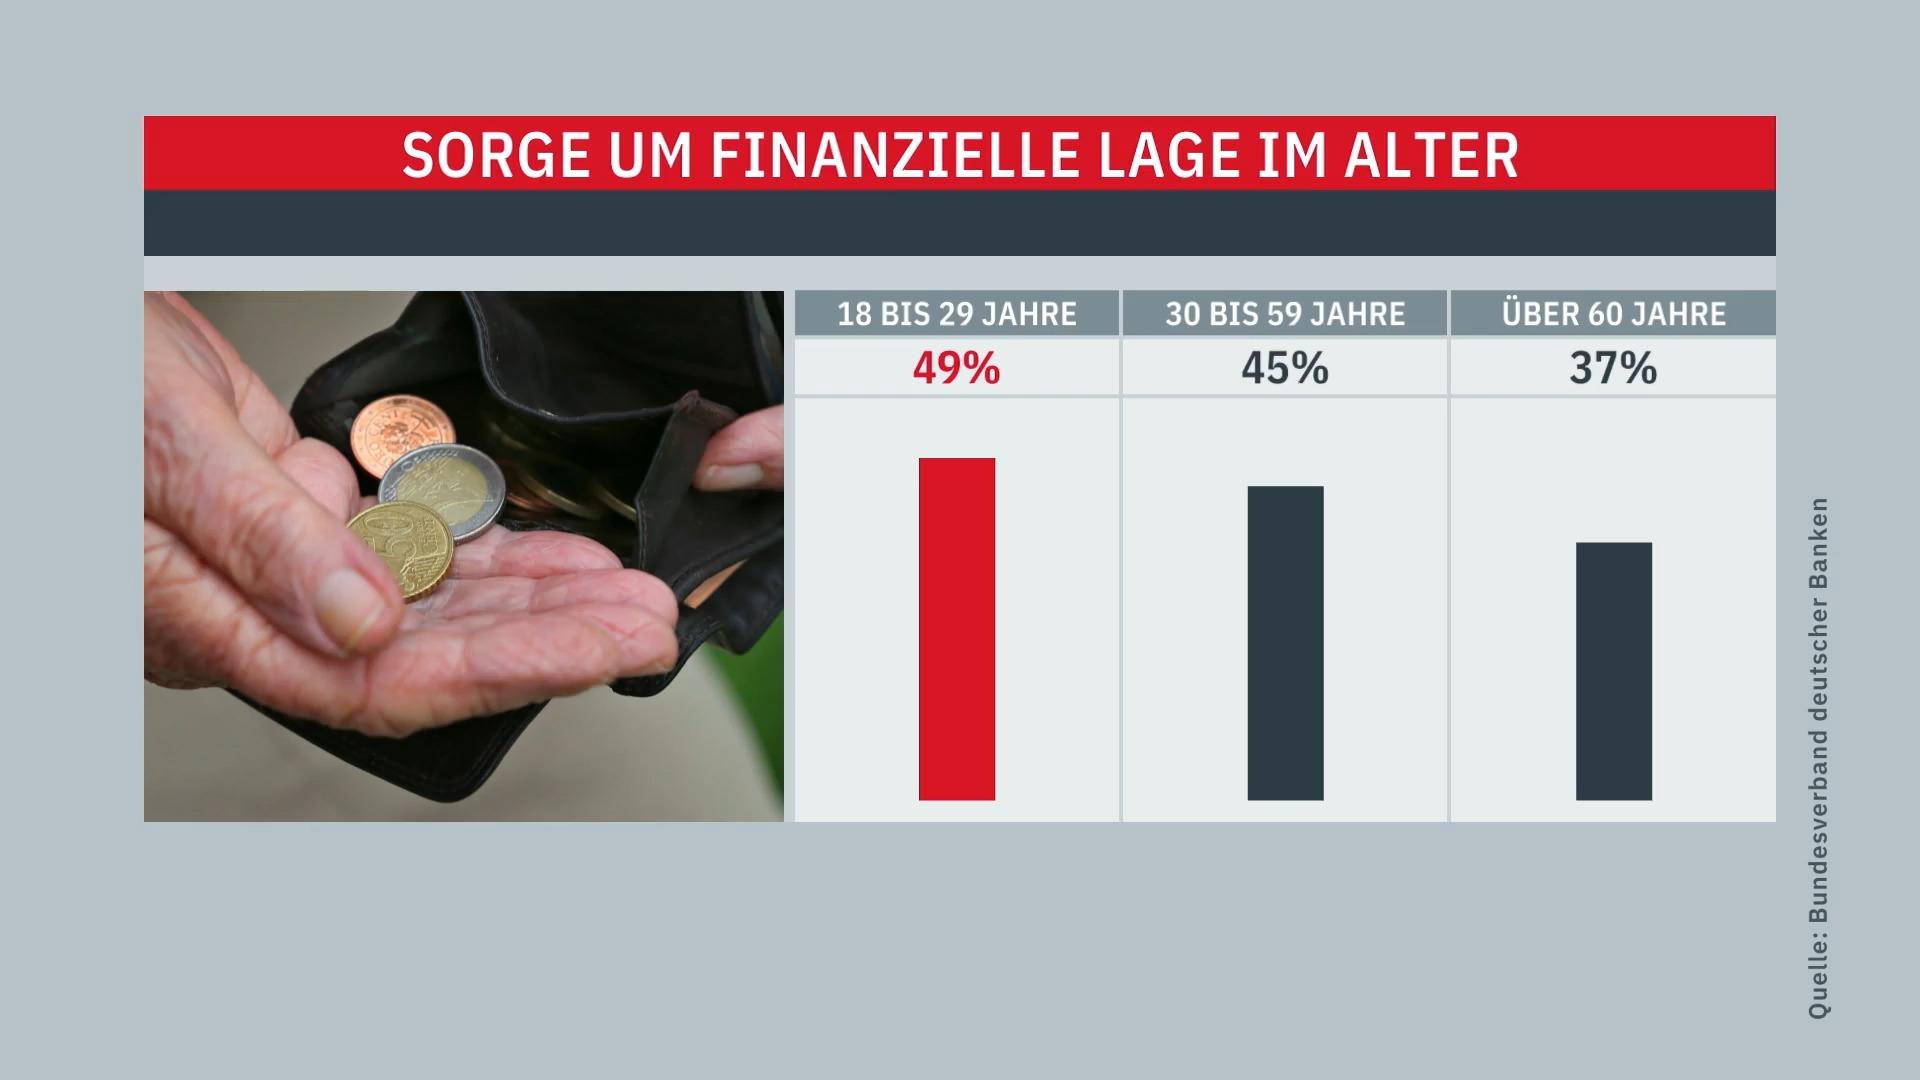 Los alemanes se preocupan por su situación financiera en la vejez, encuesta de la Asociación de Bancos